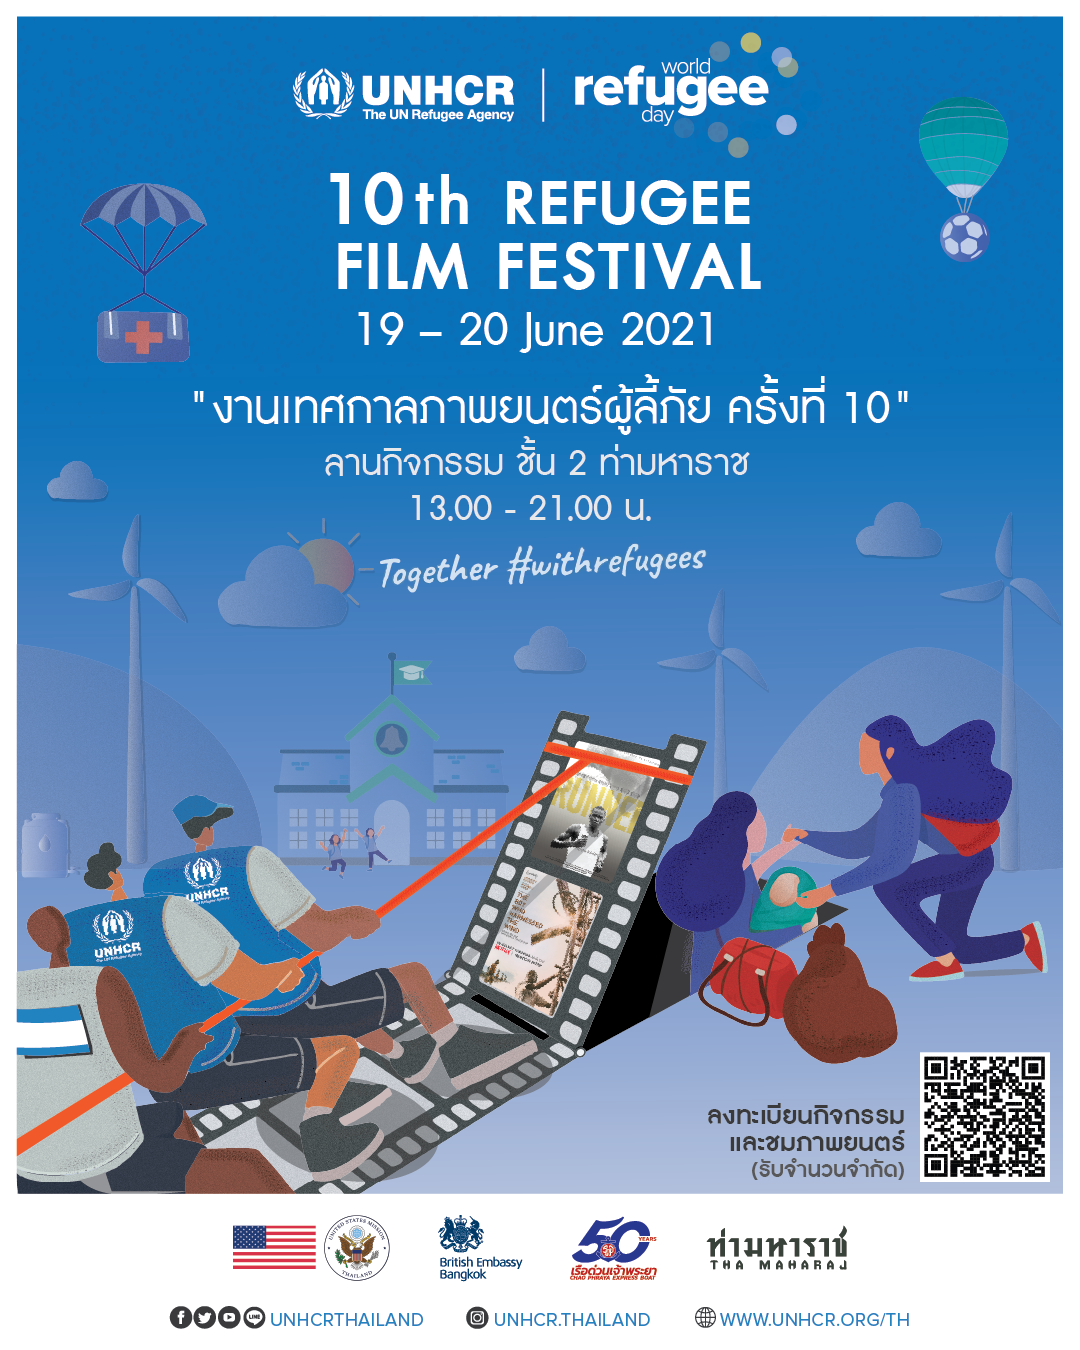 ร่วมชมภาพยนตร์ในบรรยากาศริมแม่น้ำเจ้าพระยาครั้งแรกกับ UNHCR เนื่องในวันผู้ลี้ภัยโลกในงาน "เทศกาลภาพยนตร์ผู้ลี้ภัย ครั้งที่ 10"